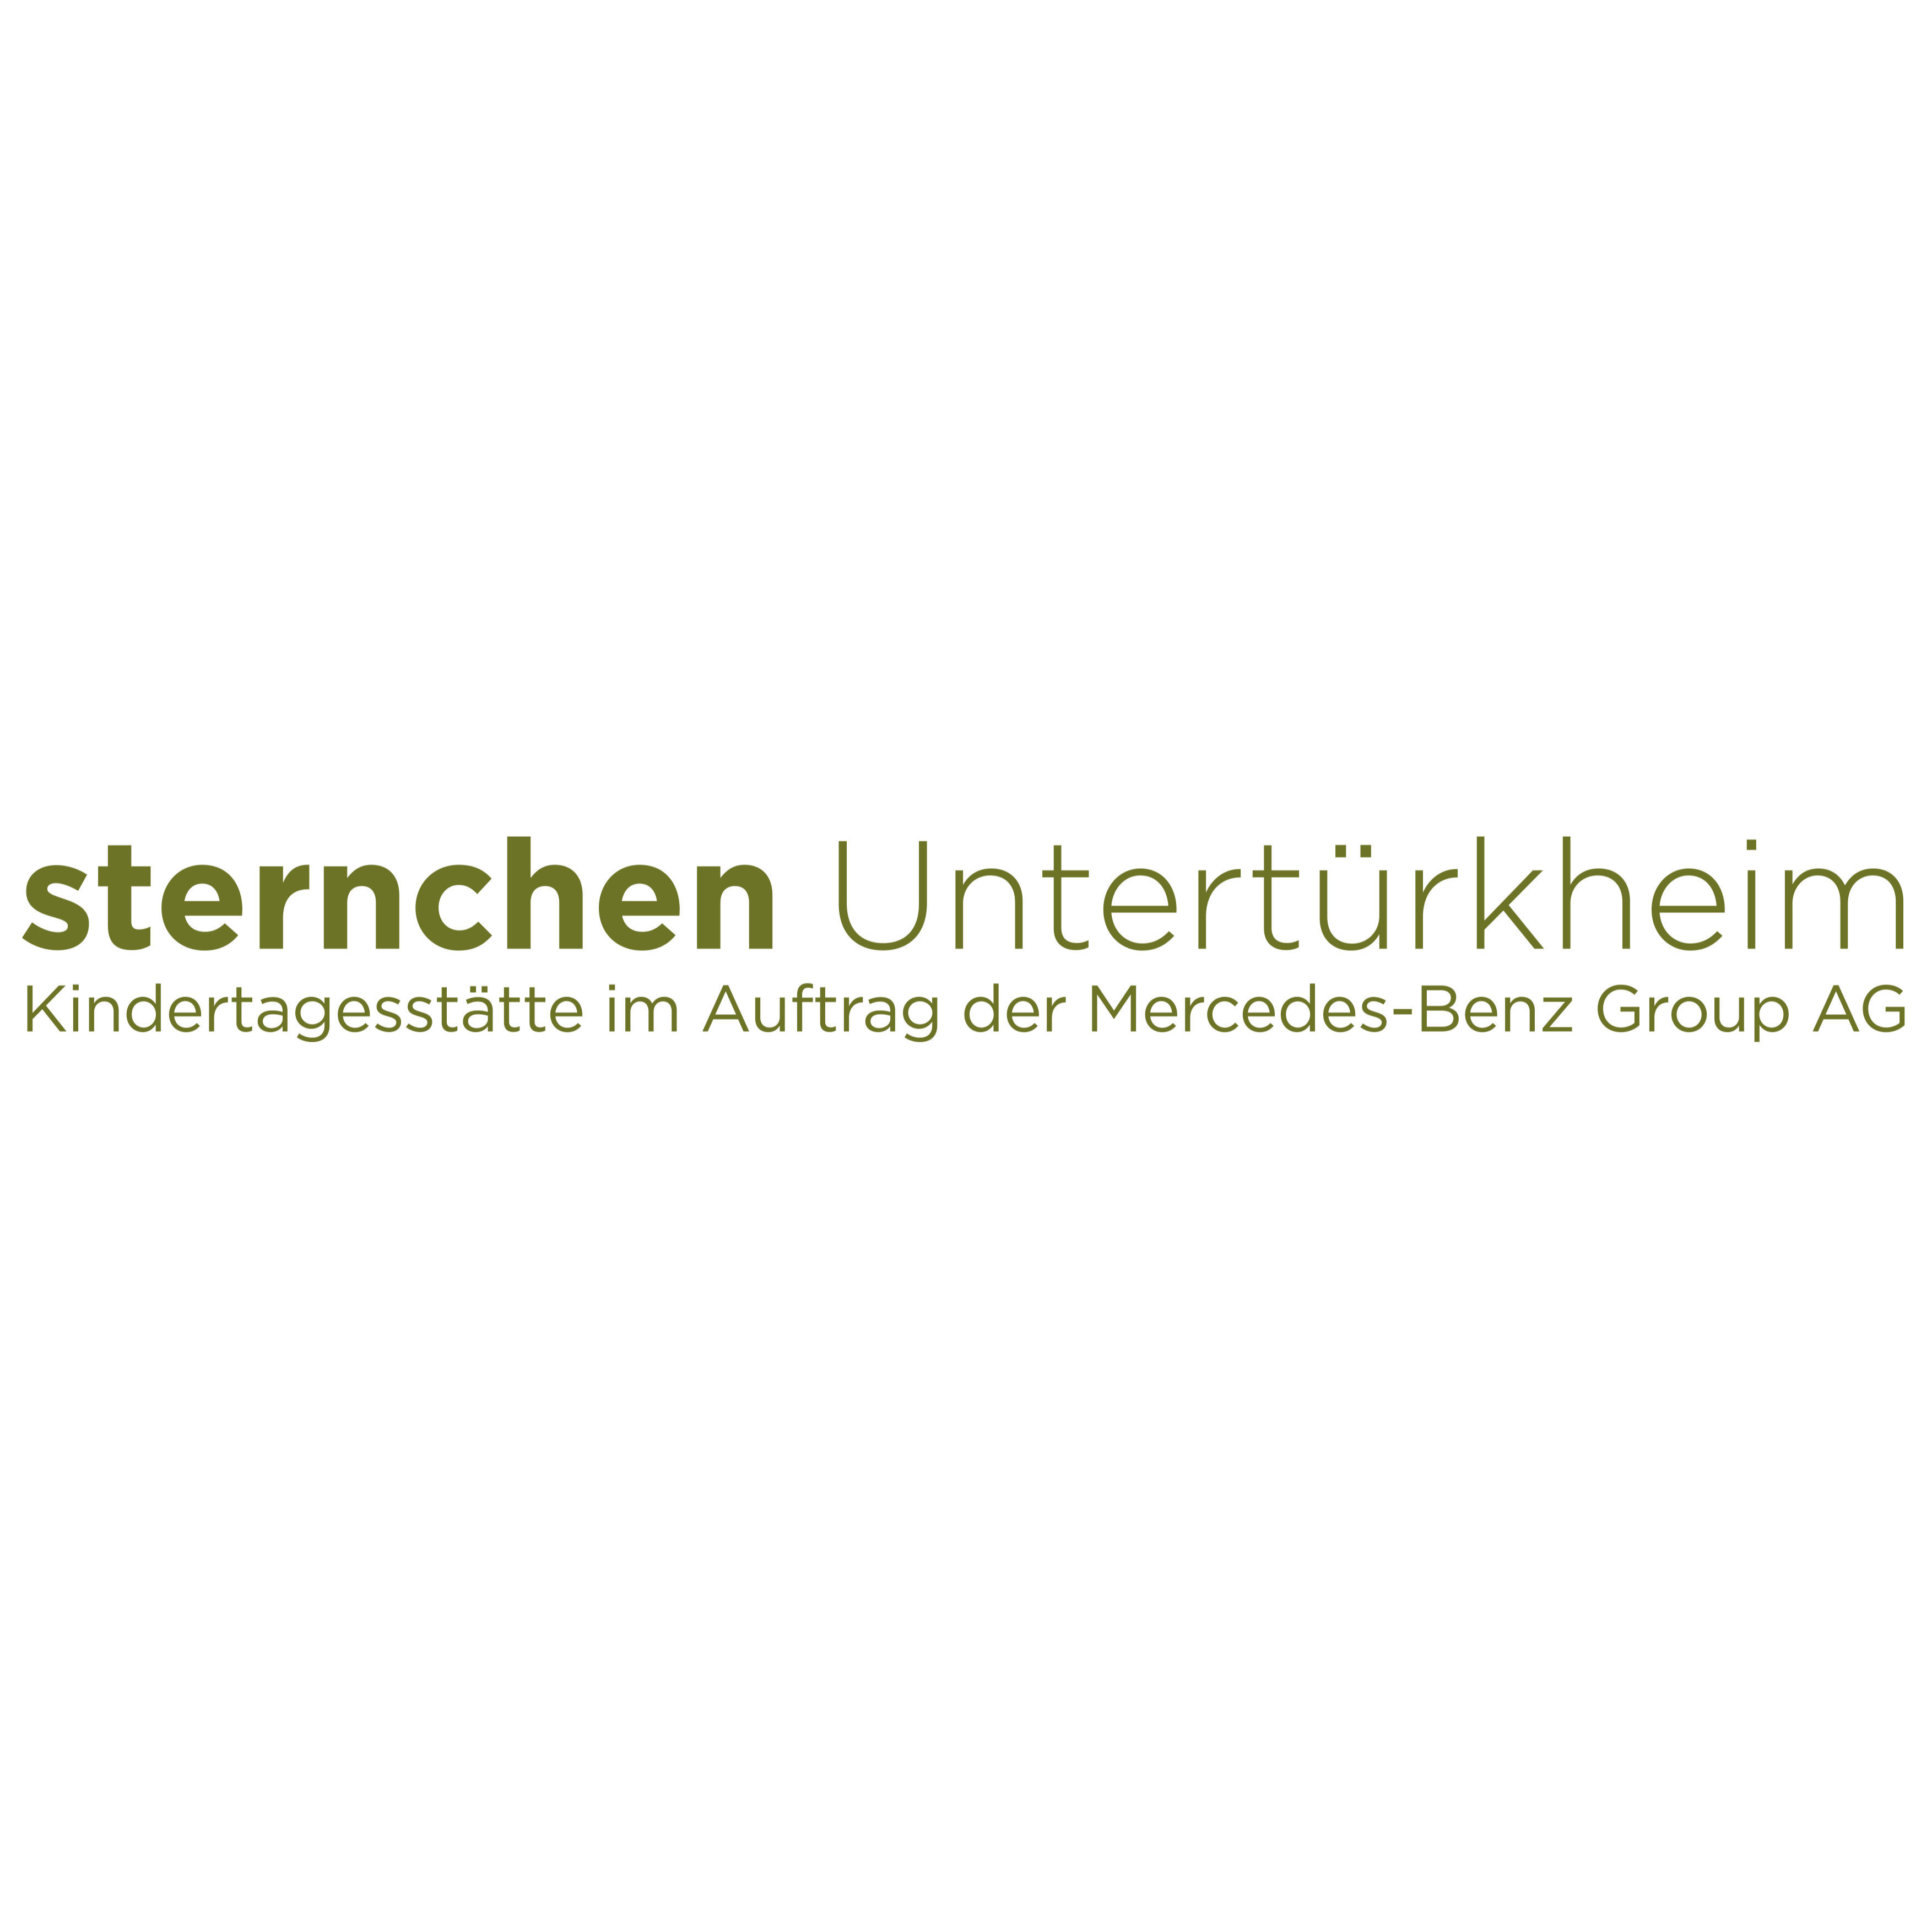 sternchen Untertürkheim - pme Familienservice  